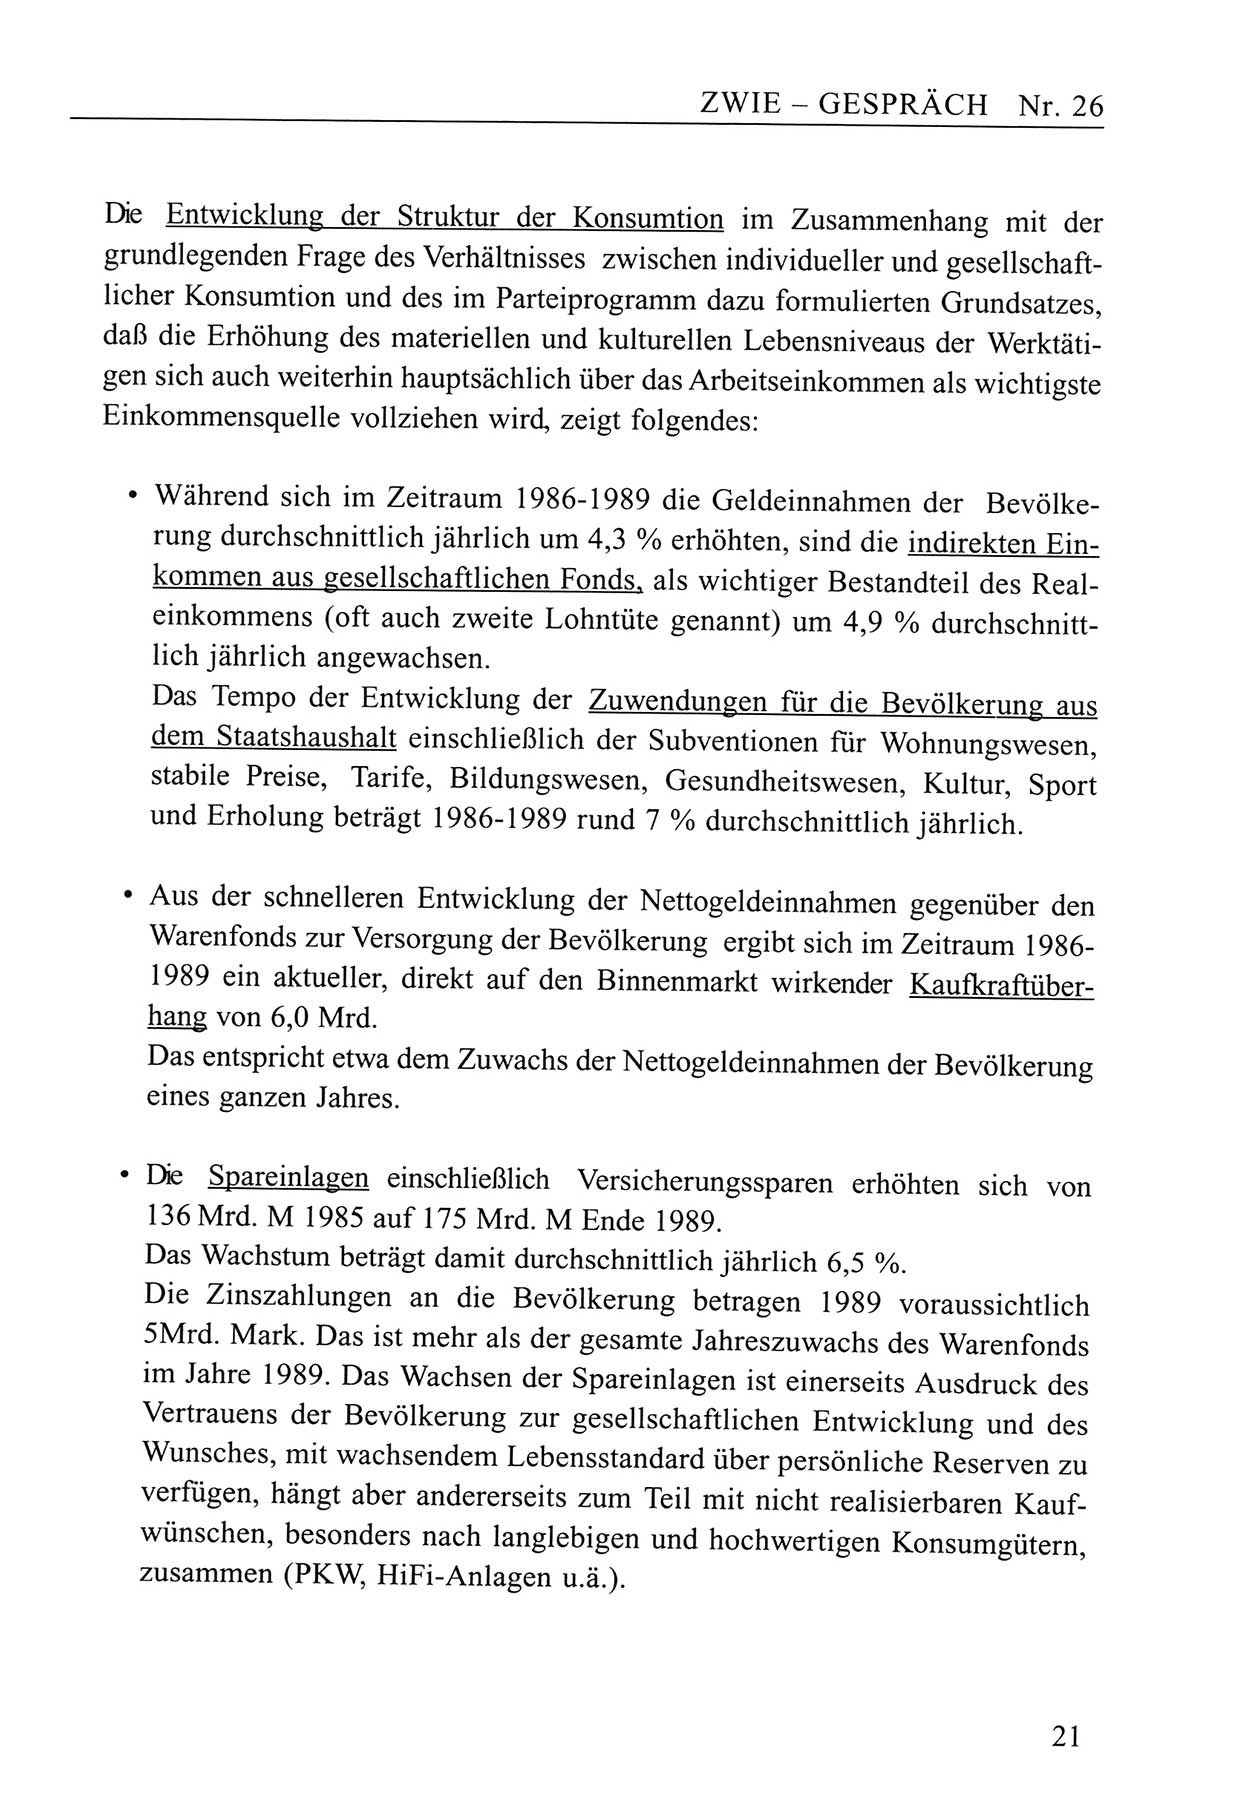 Zwie-Gespräch, Beiträge zum Umgang mit der Staatssicherheits-Vergangenheit [Deutsche Demokratische Republik (DDR)], Ausgabe Nr. 26, Berlin 1995, Seite 21 (Zwie-Gespr. Ausg. 26 1995, S. 21)